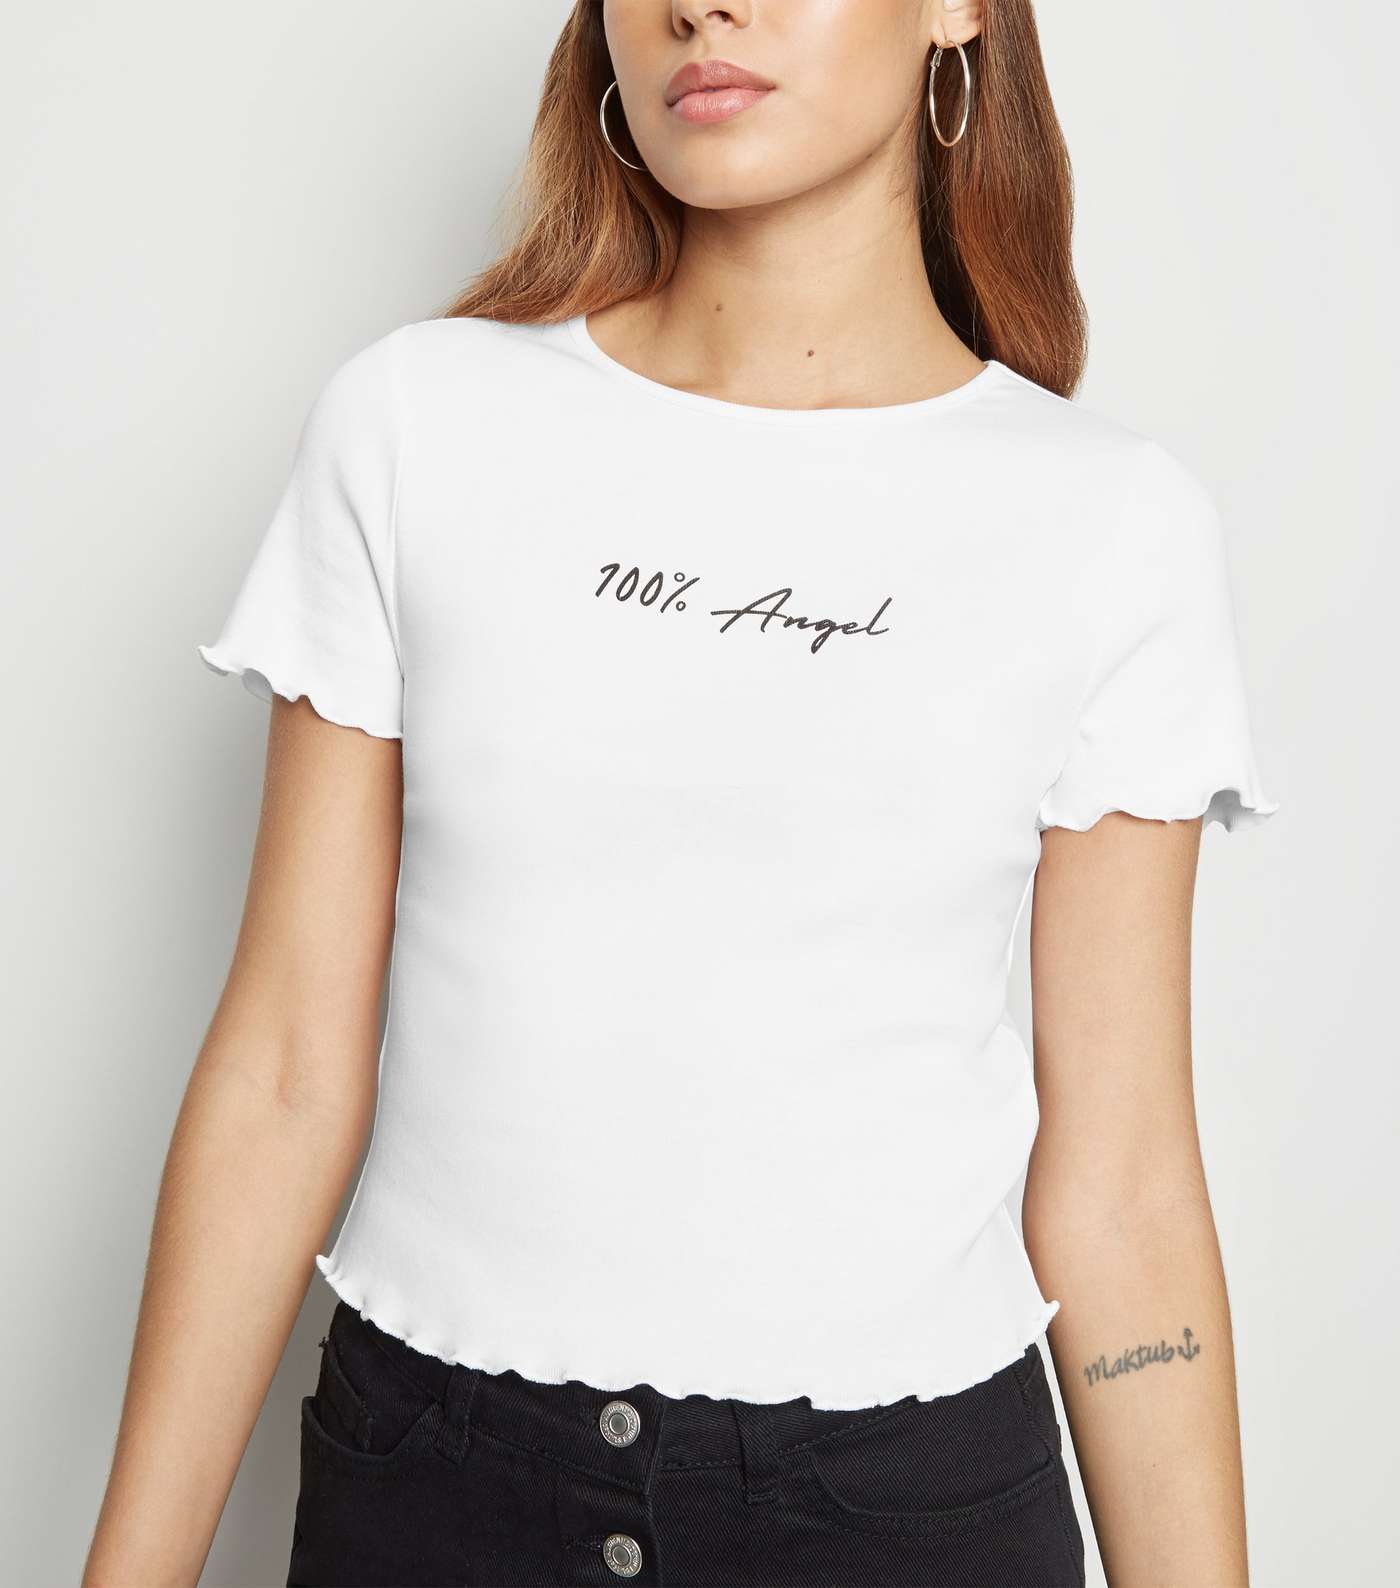 White Frill Trim 100% Percent Slogan T-Shirt